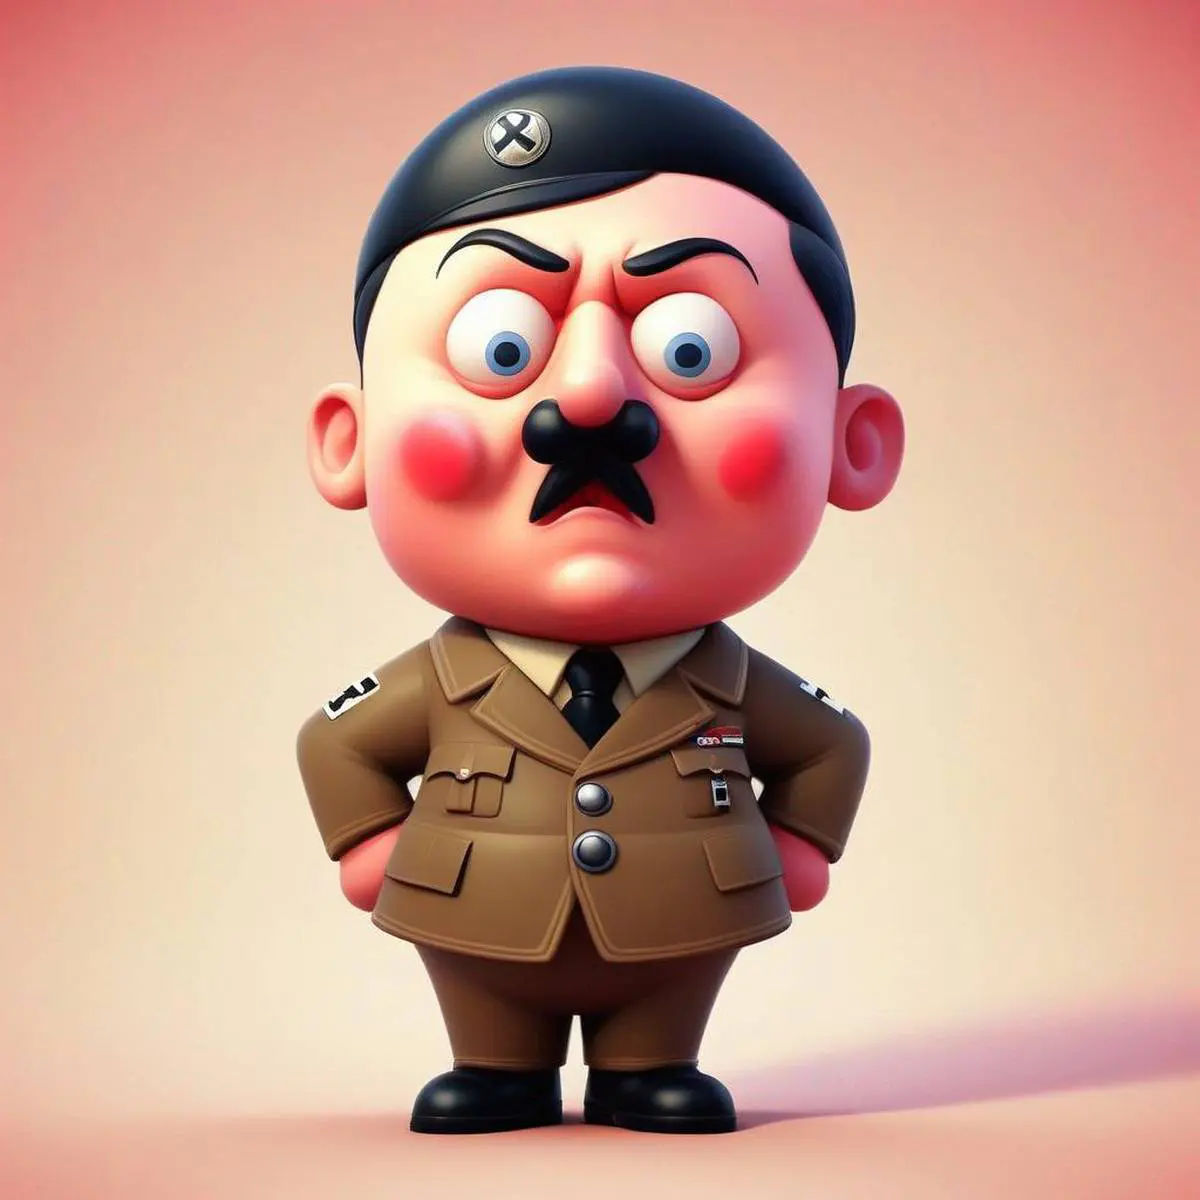 Hitler puns